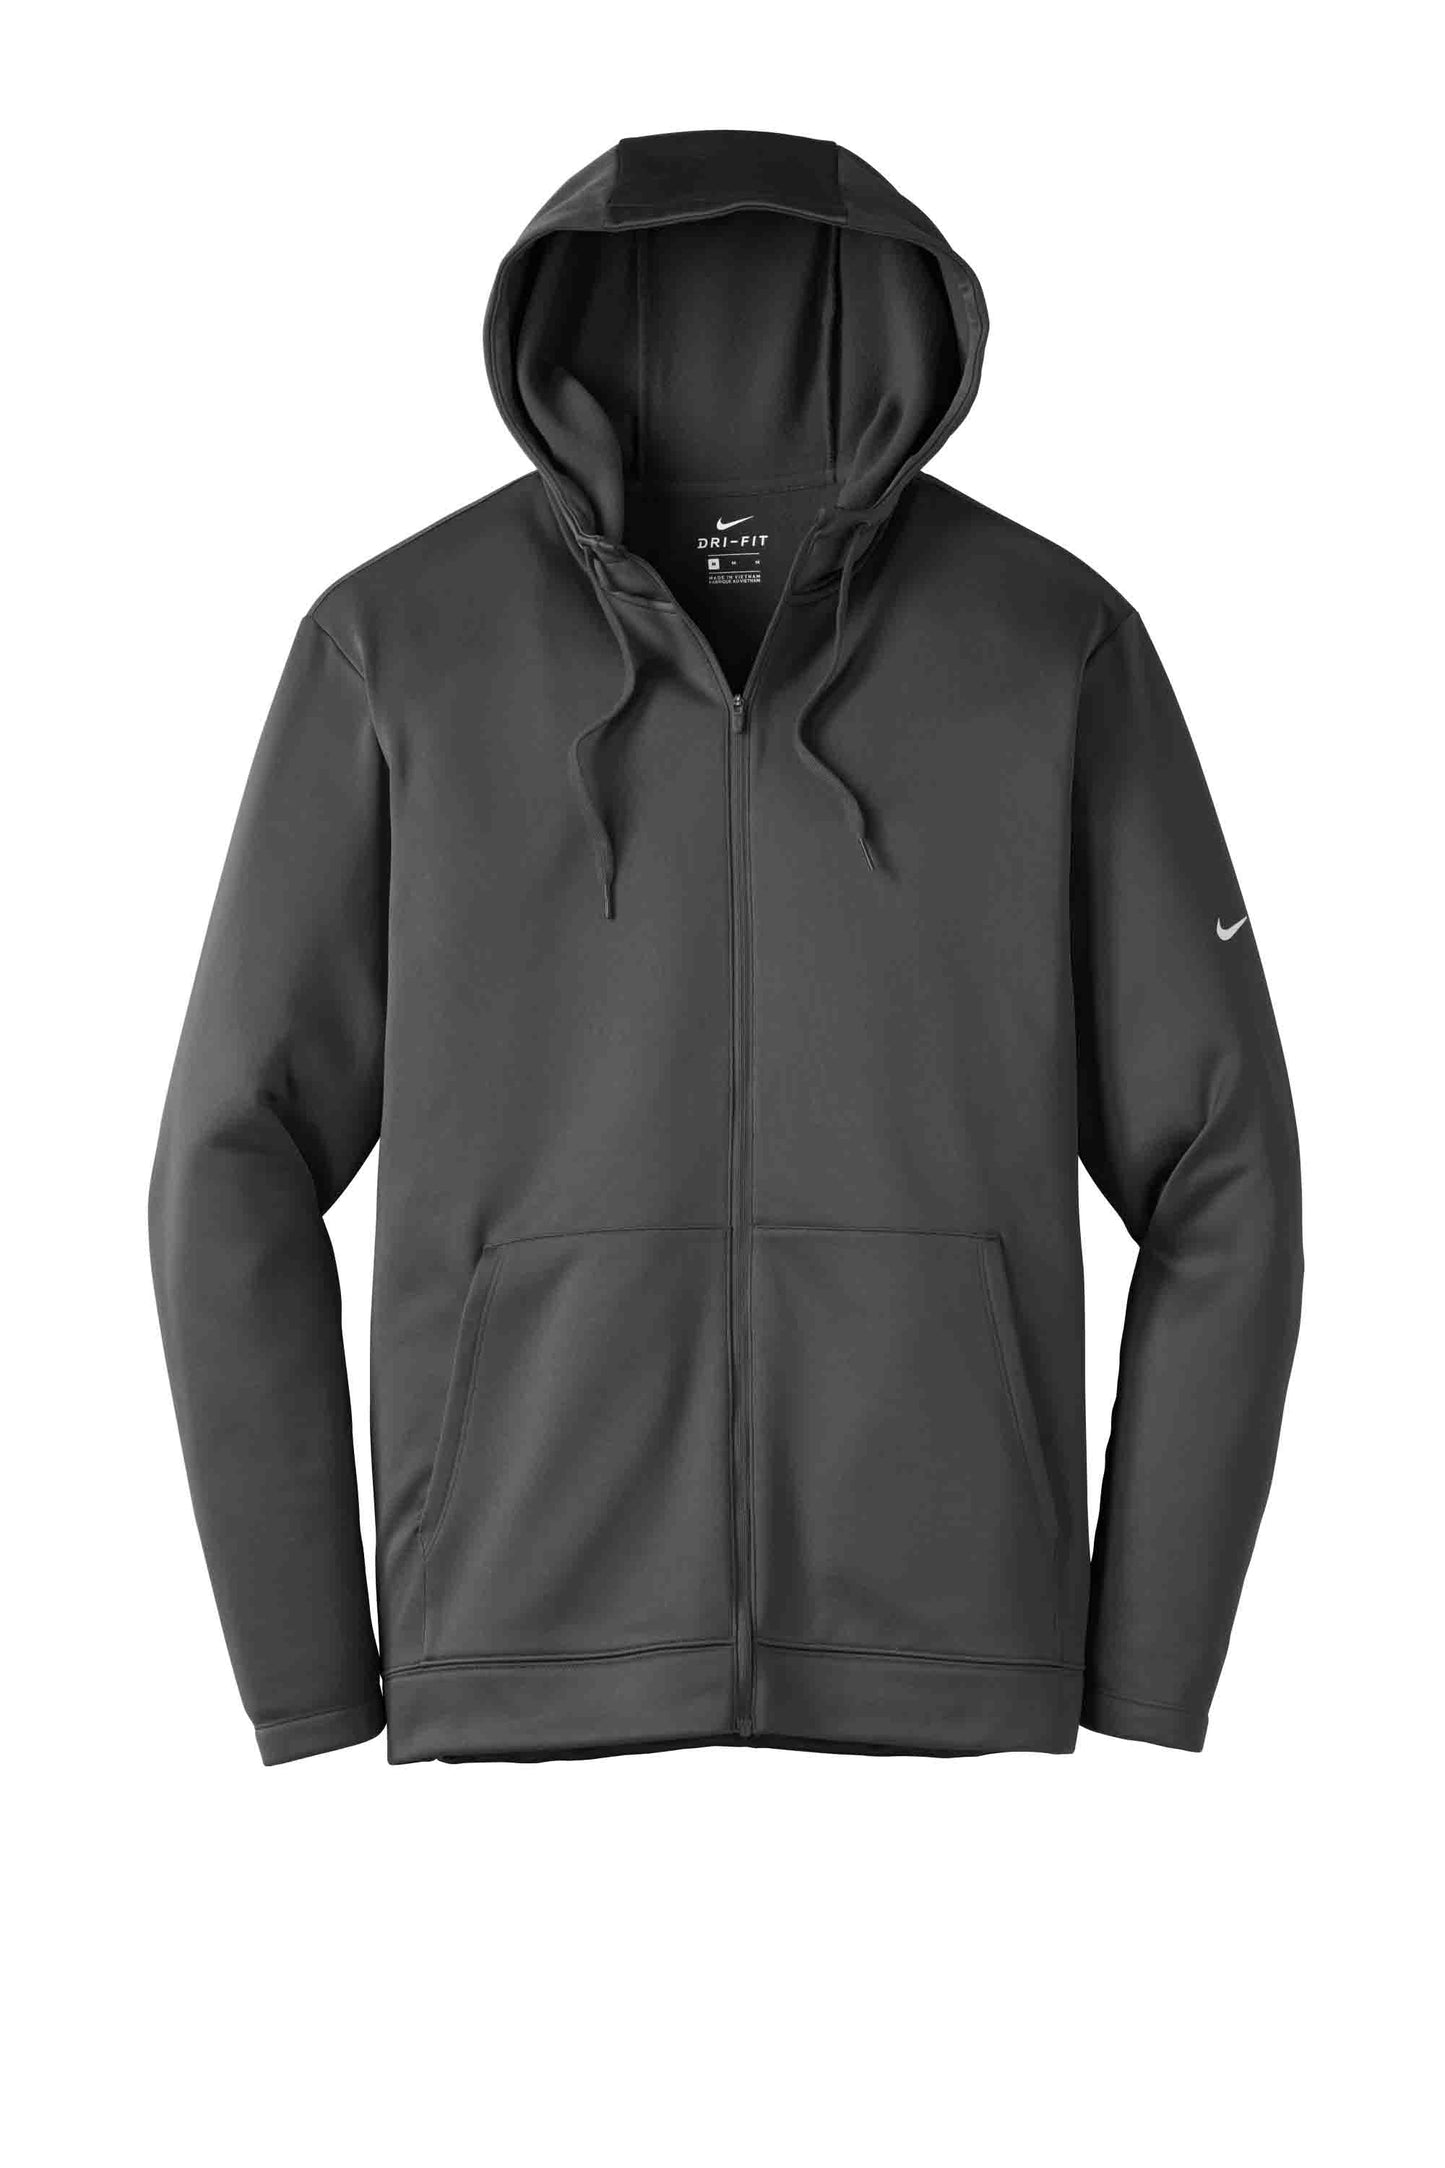 Nike Dri-FIT Hooded Zip Sweatshirt